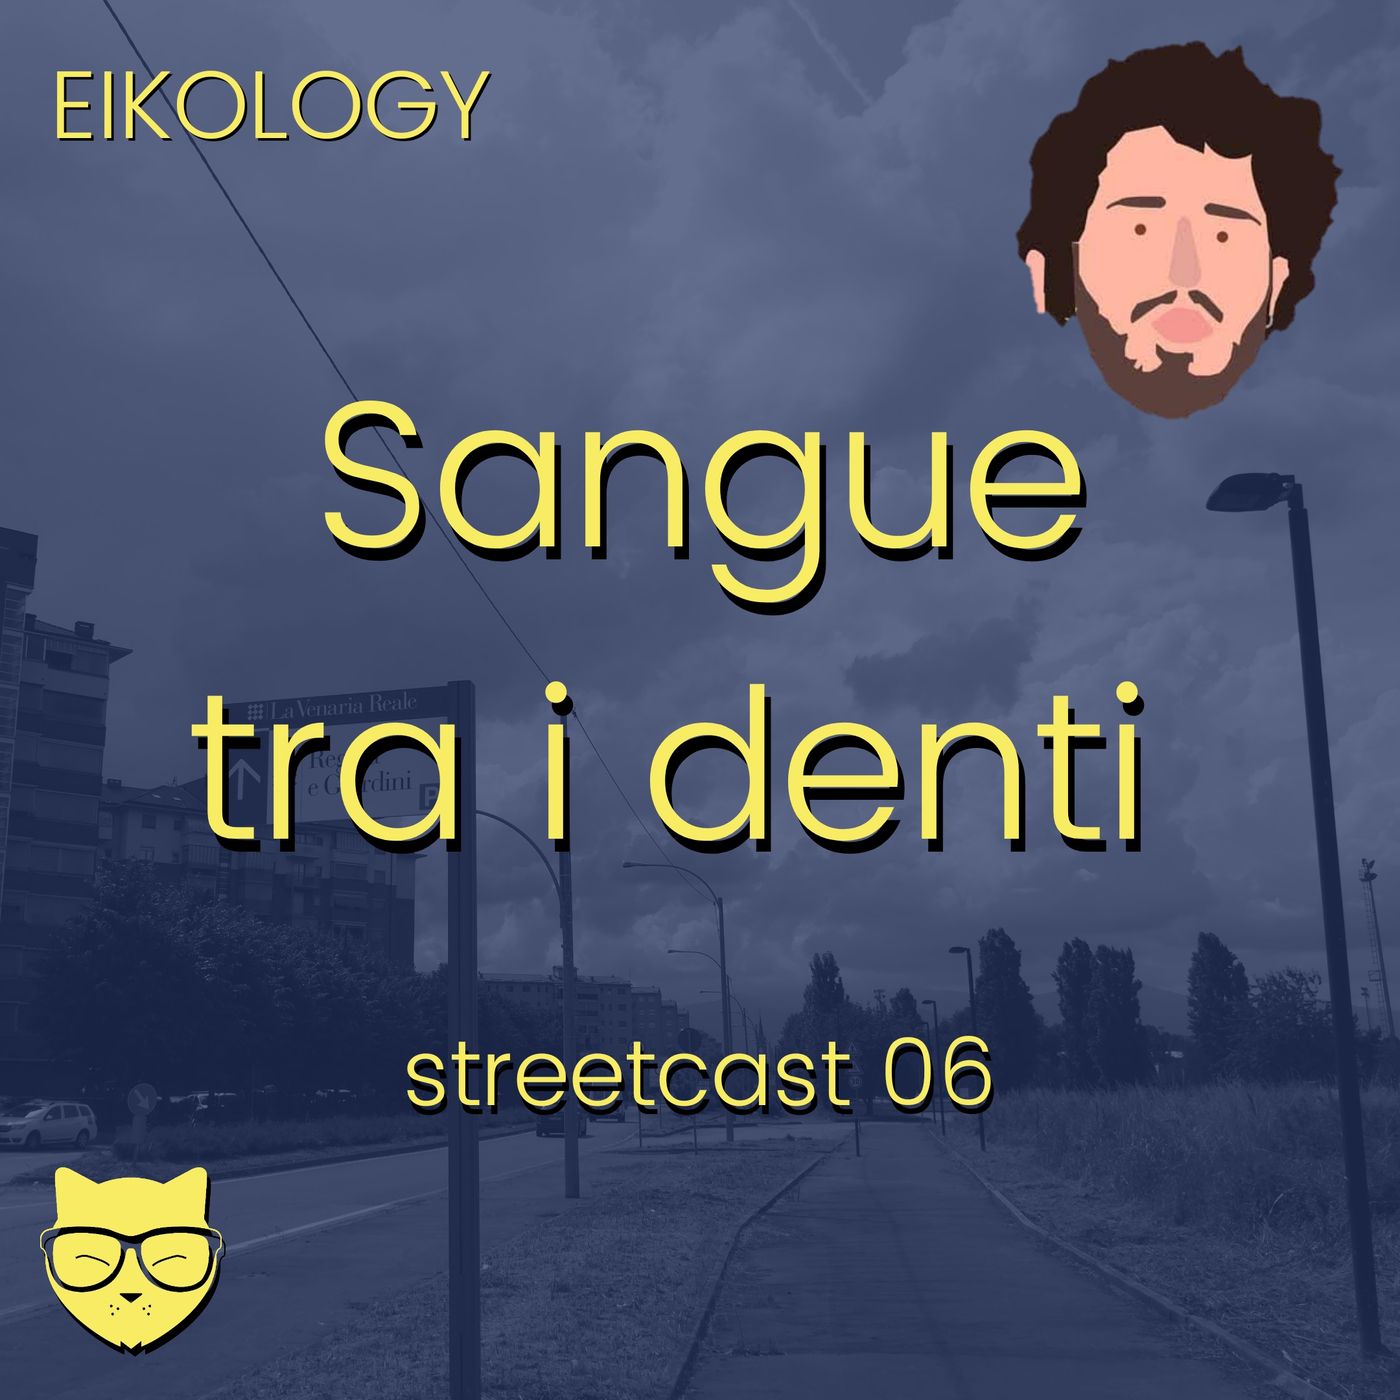 Sangue tra i denti (streetcast 06)